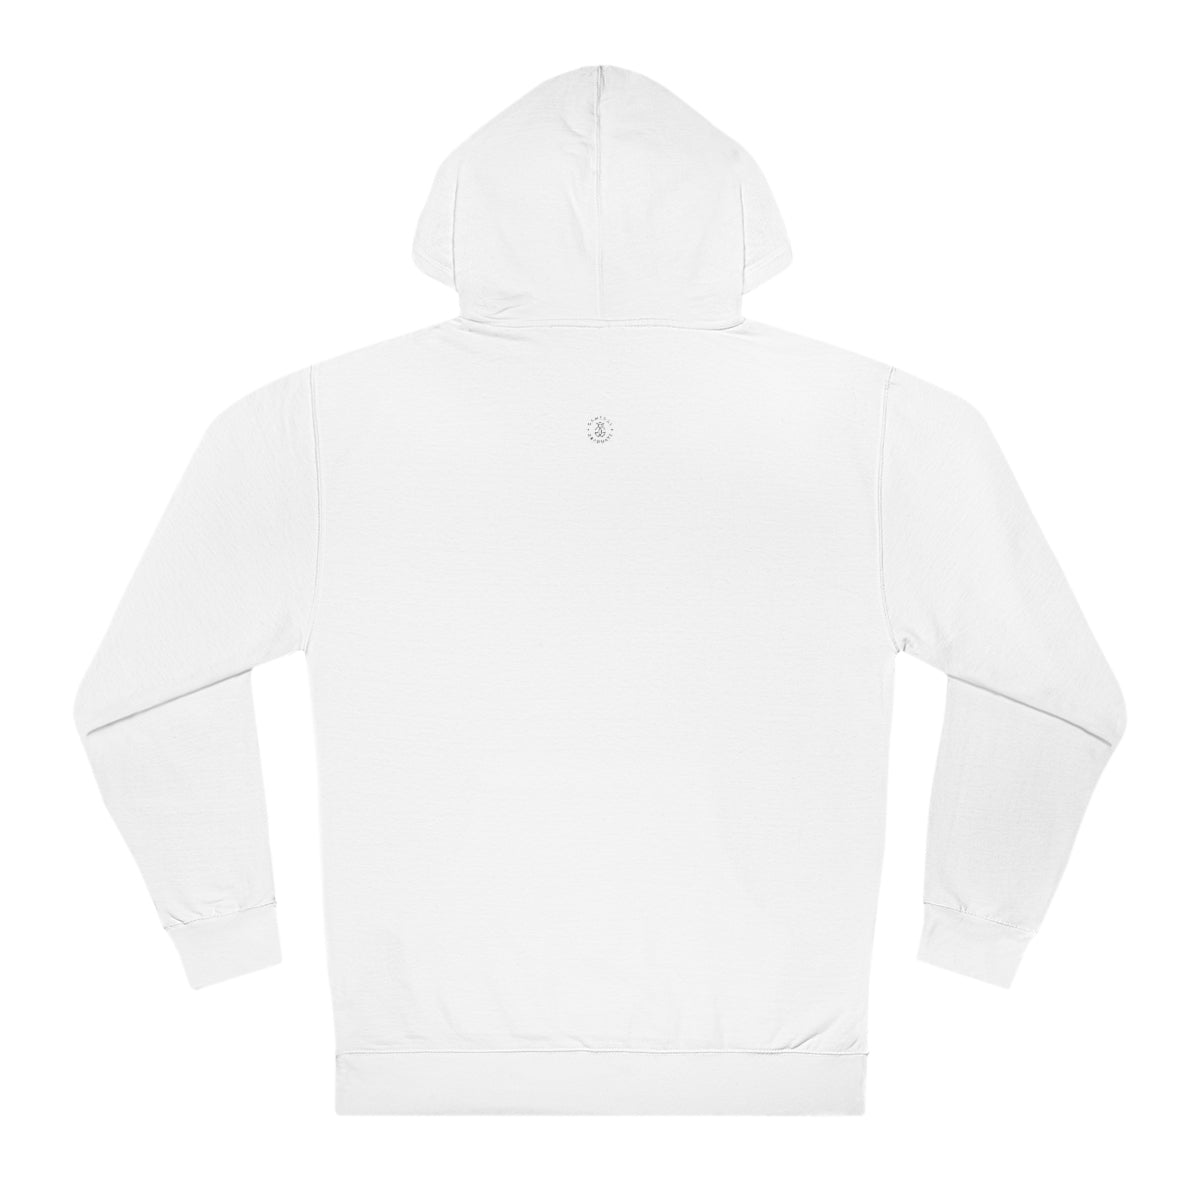 Ohio State Hooded Sweatshirt - GG - ITC